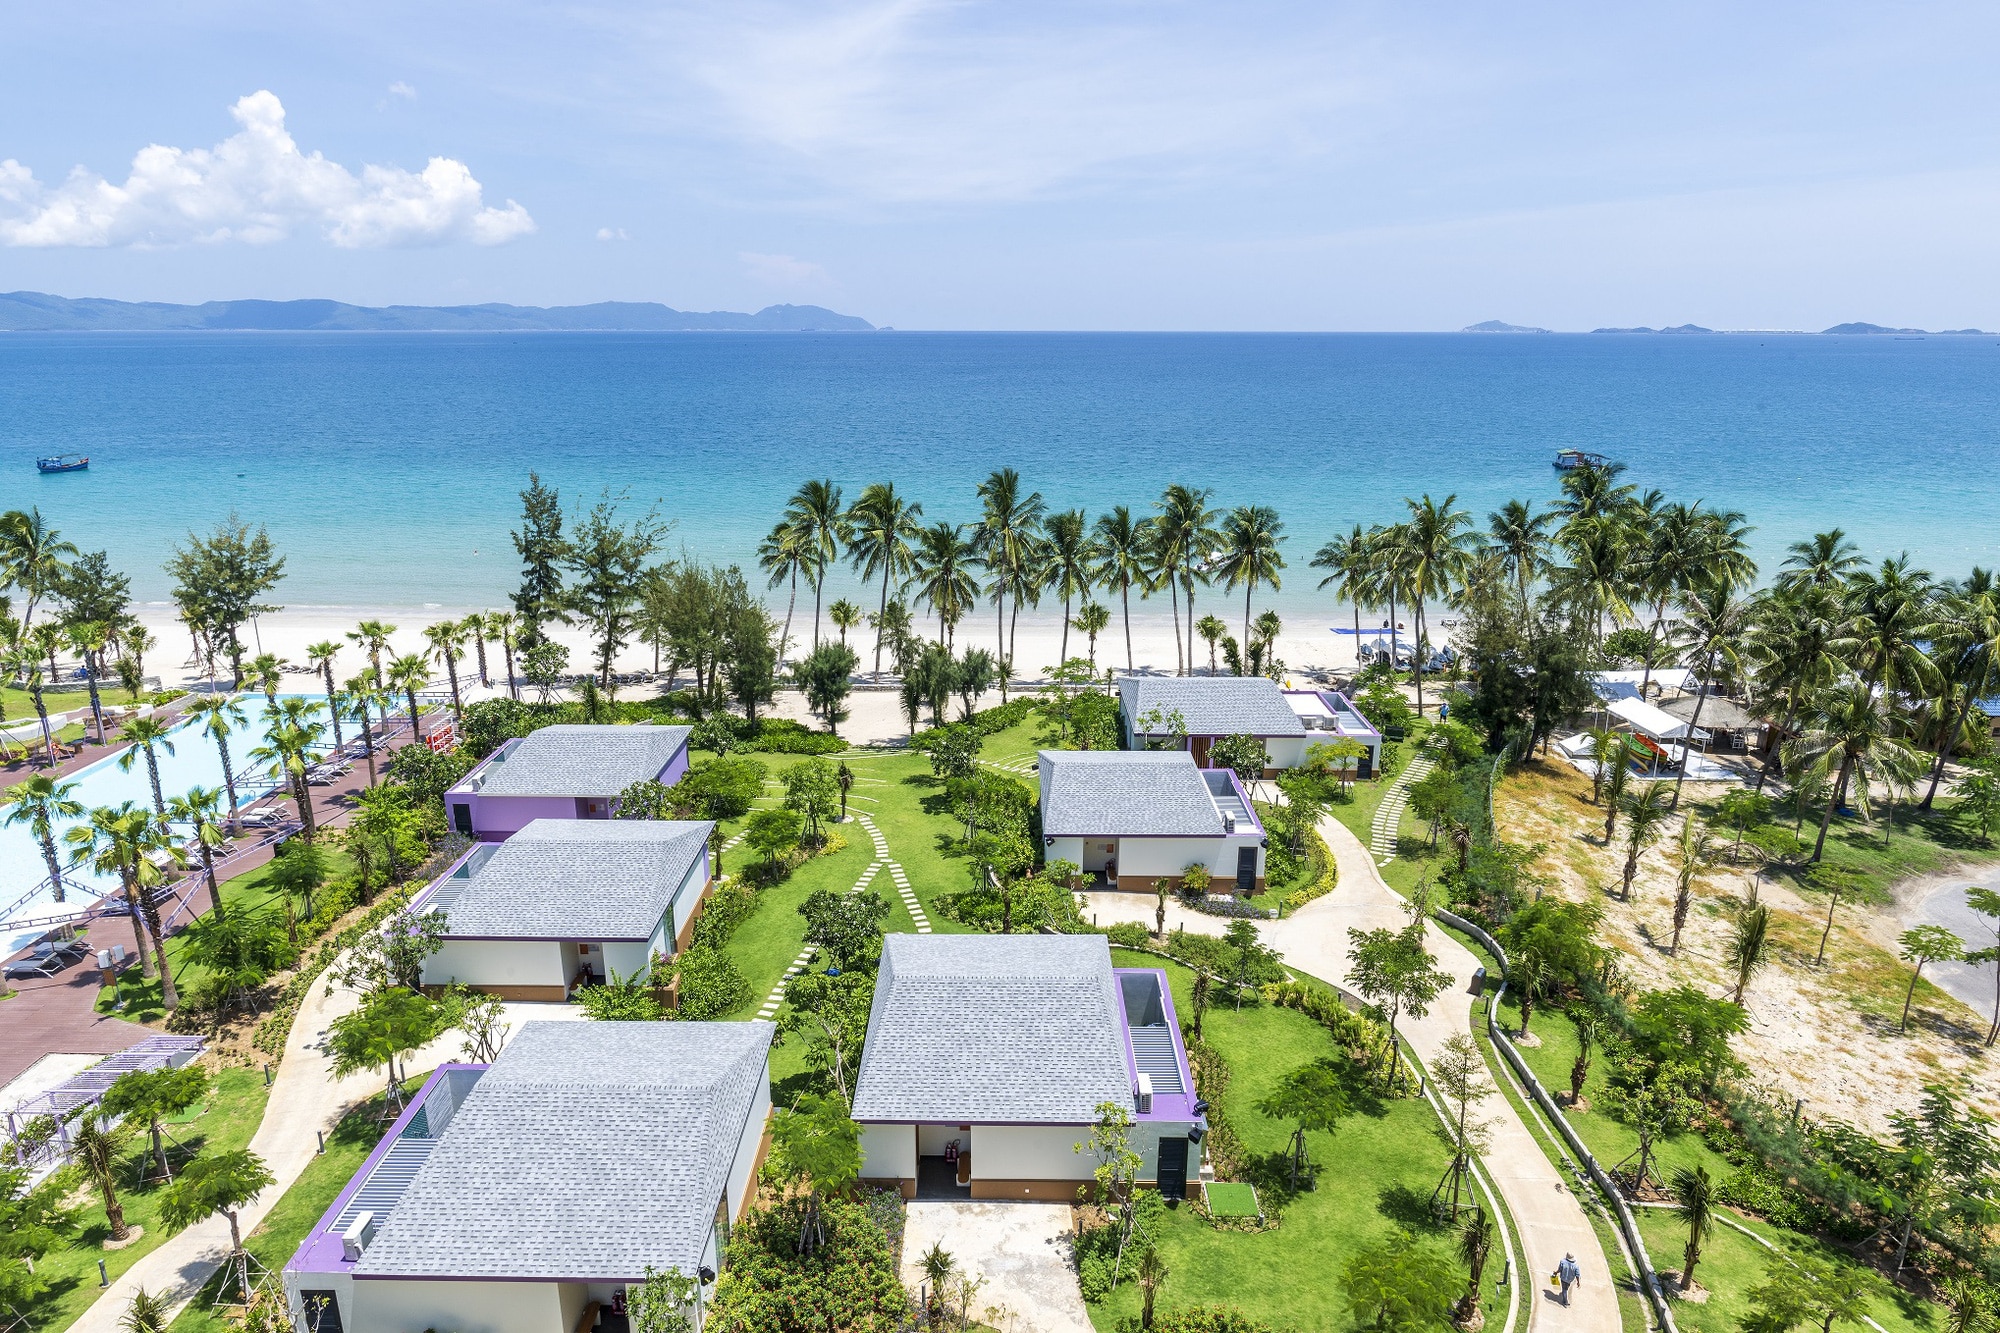 Tại TTC Van Phong Bay Resort, du khách có thể hòa mình vào biển cả bao la và cát mịn êm đềm vỗ về từng bước chân. Ảnh: Đ.H